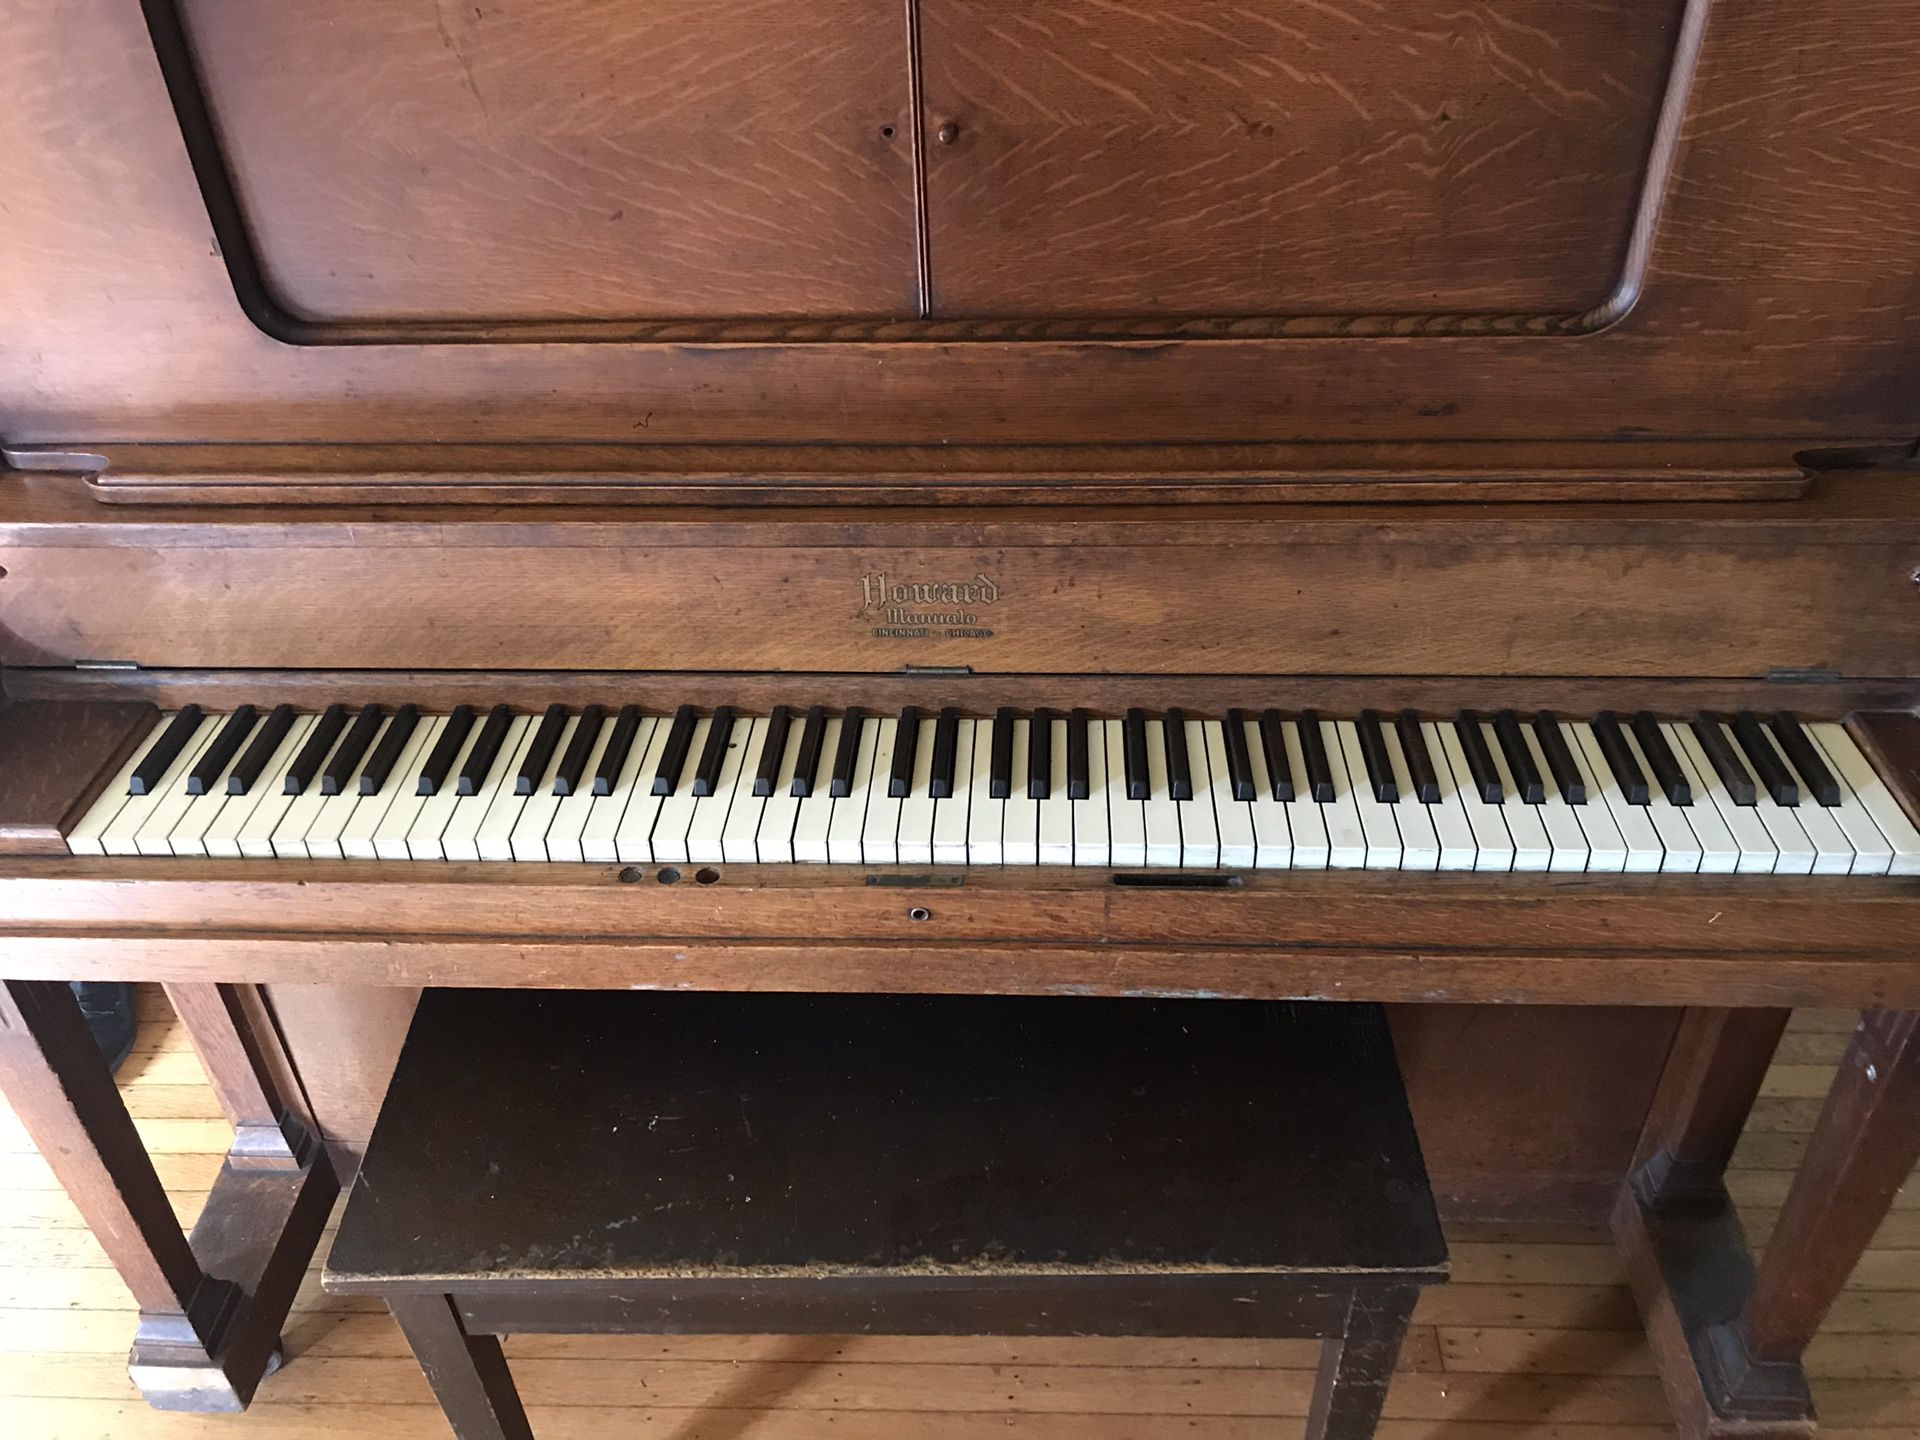 howard piano serial number